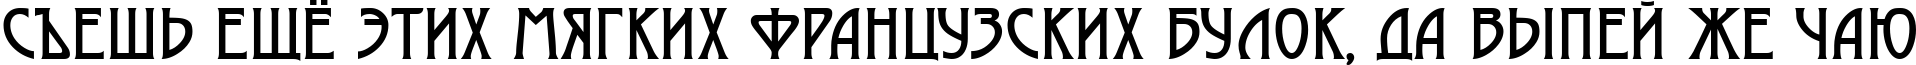 Пример написания шрифтом a_Moderno текста на русском